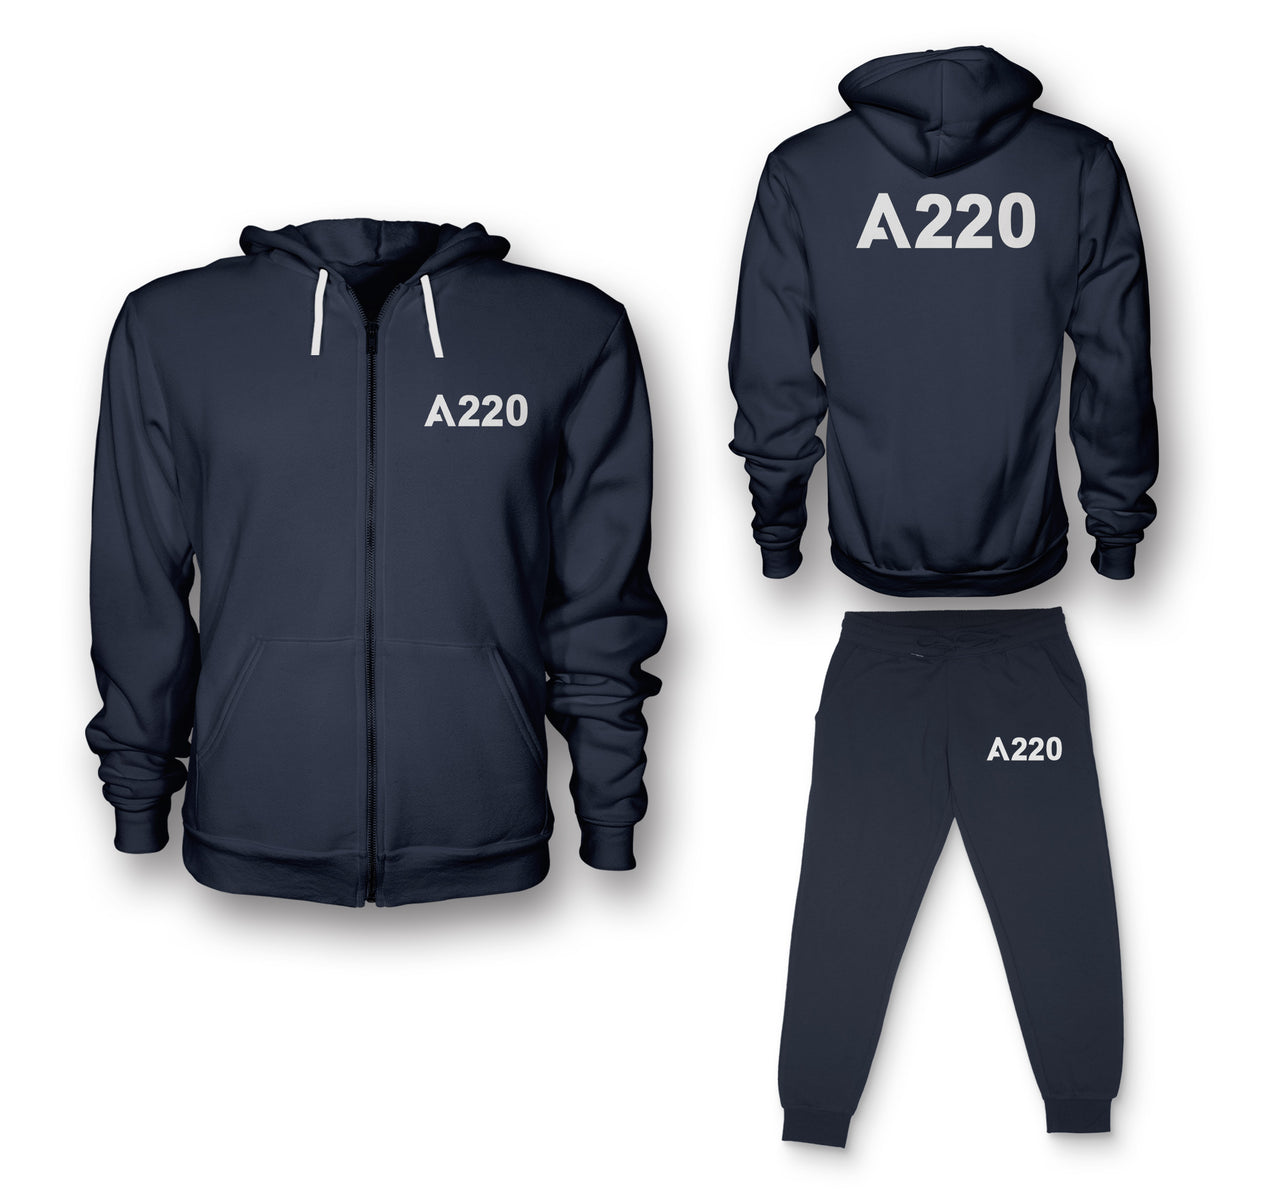 A220 Flat Text Designed Zipped Hoodies & Sweatpants Set